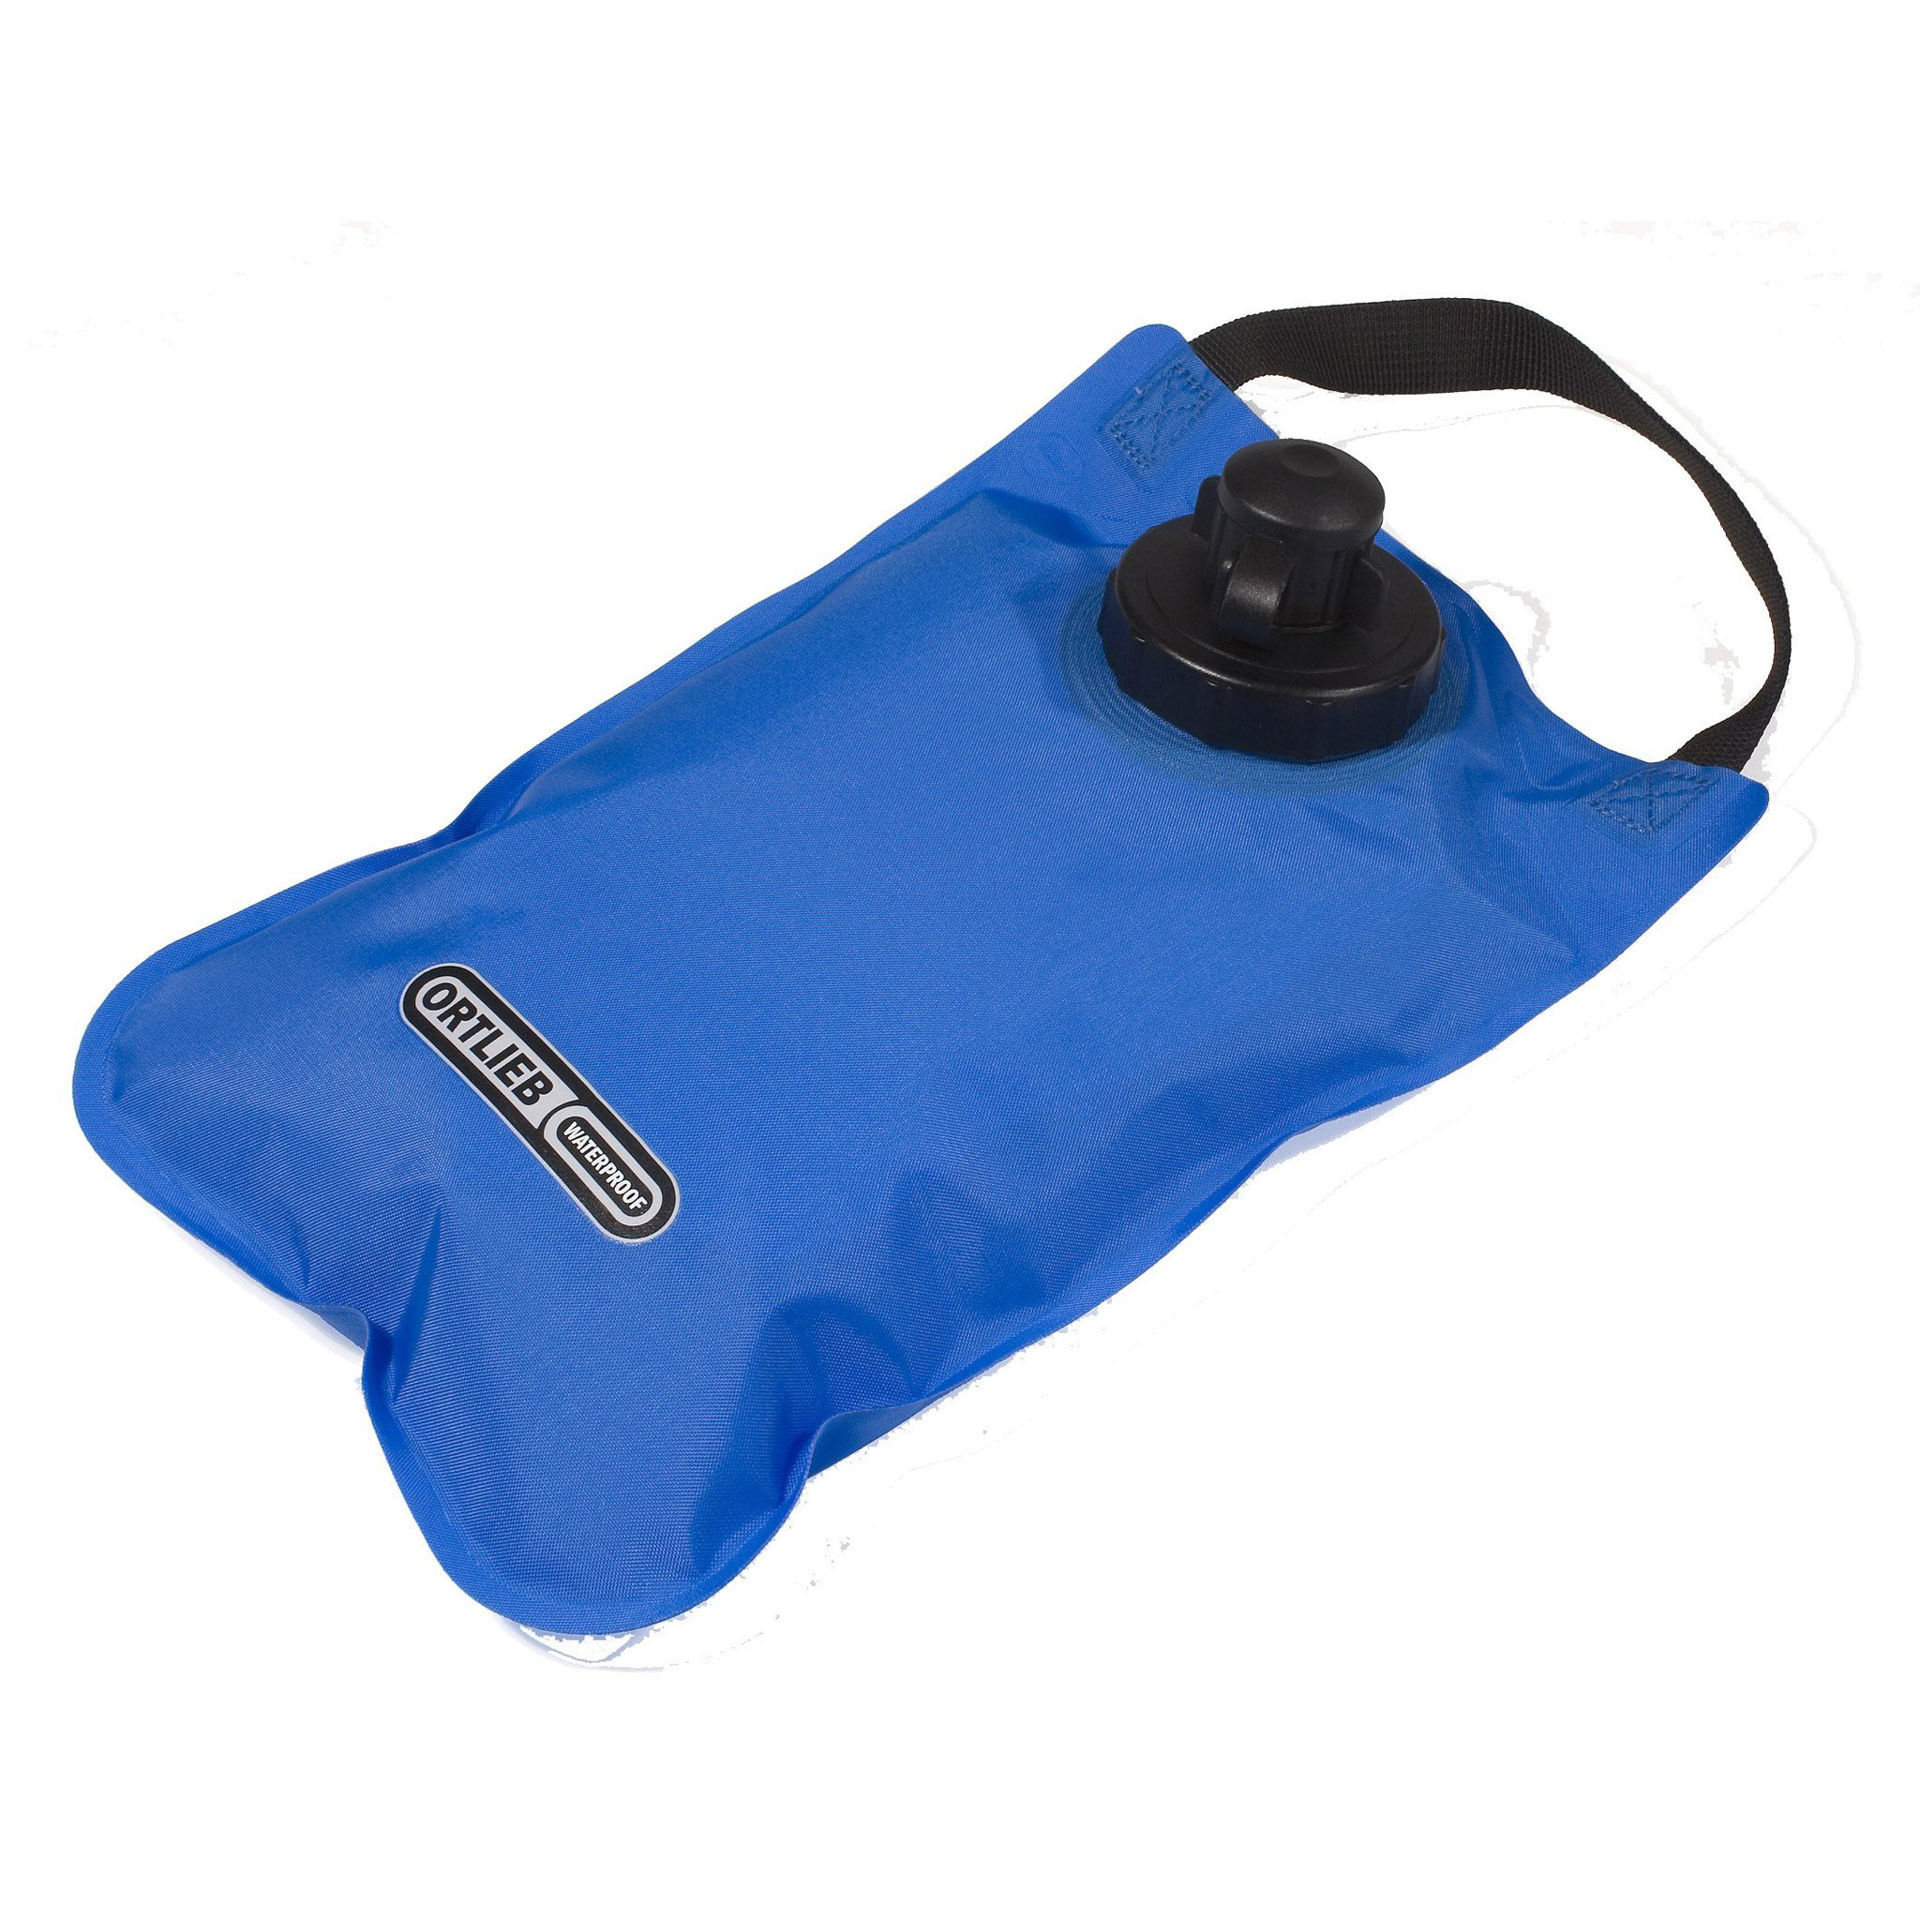 Ortlieb Water Bag 2L Blue